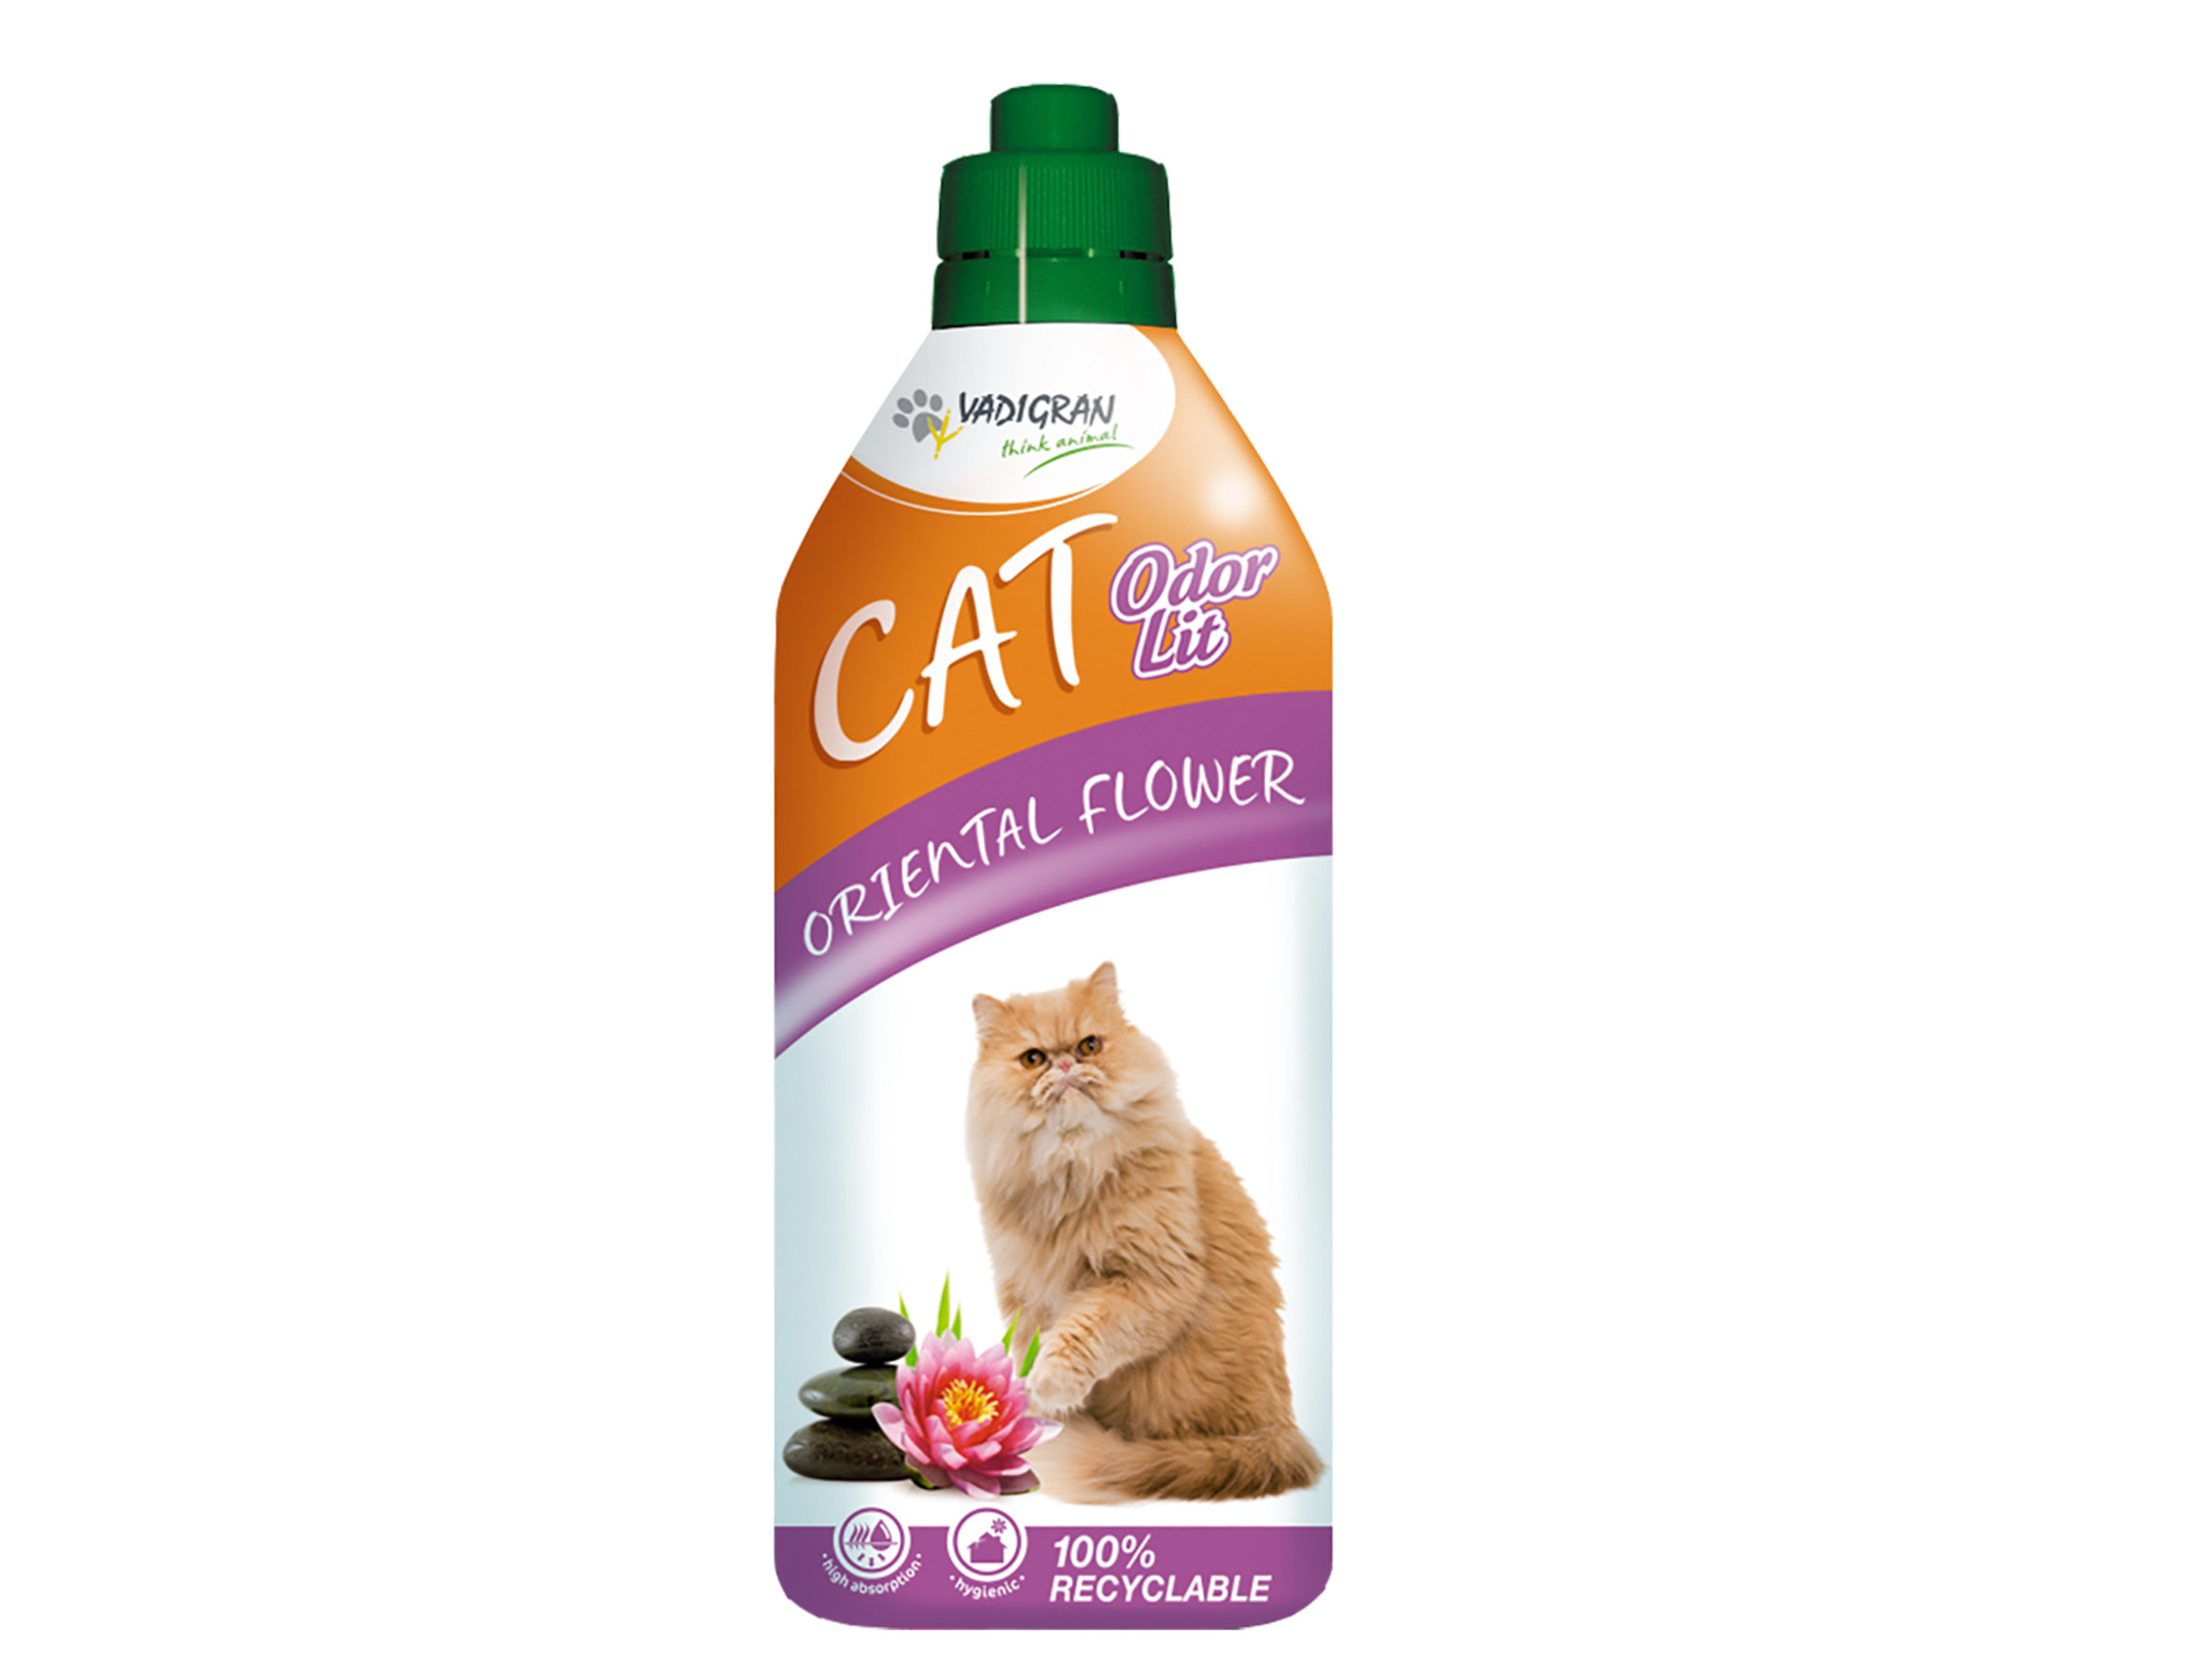 Cat's Best - Cat litter - CatCats Best Original - Vadigran